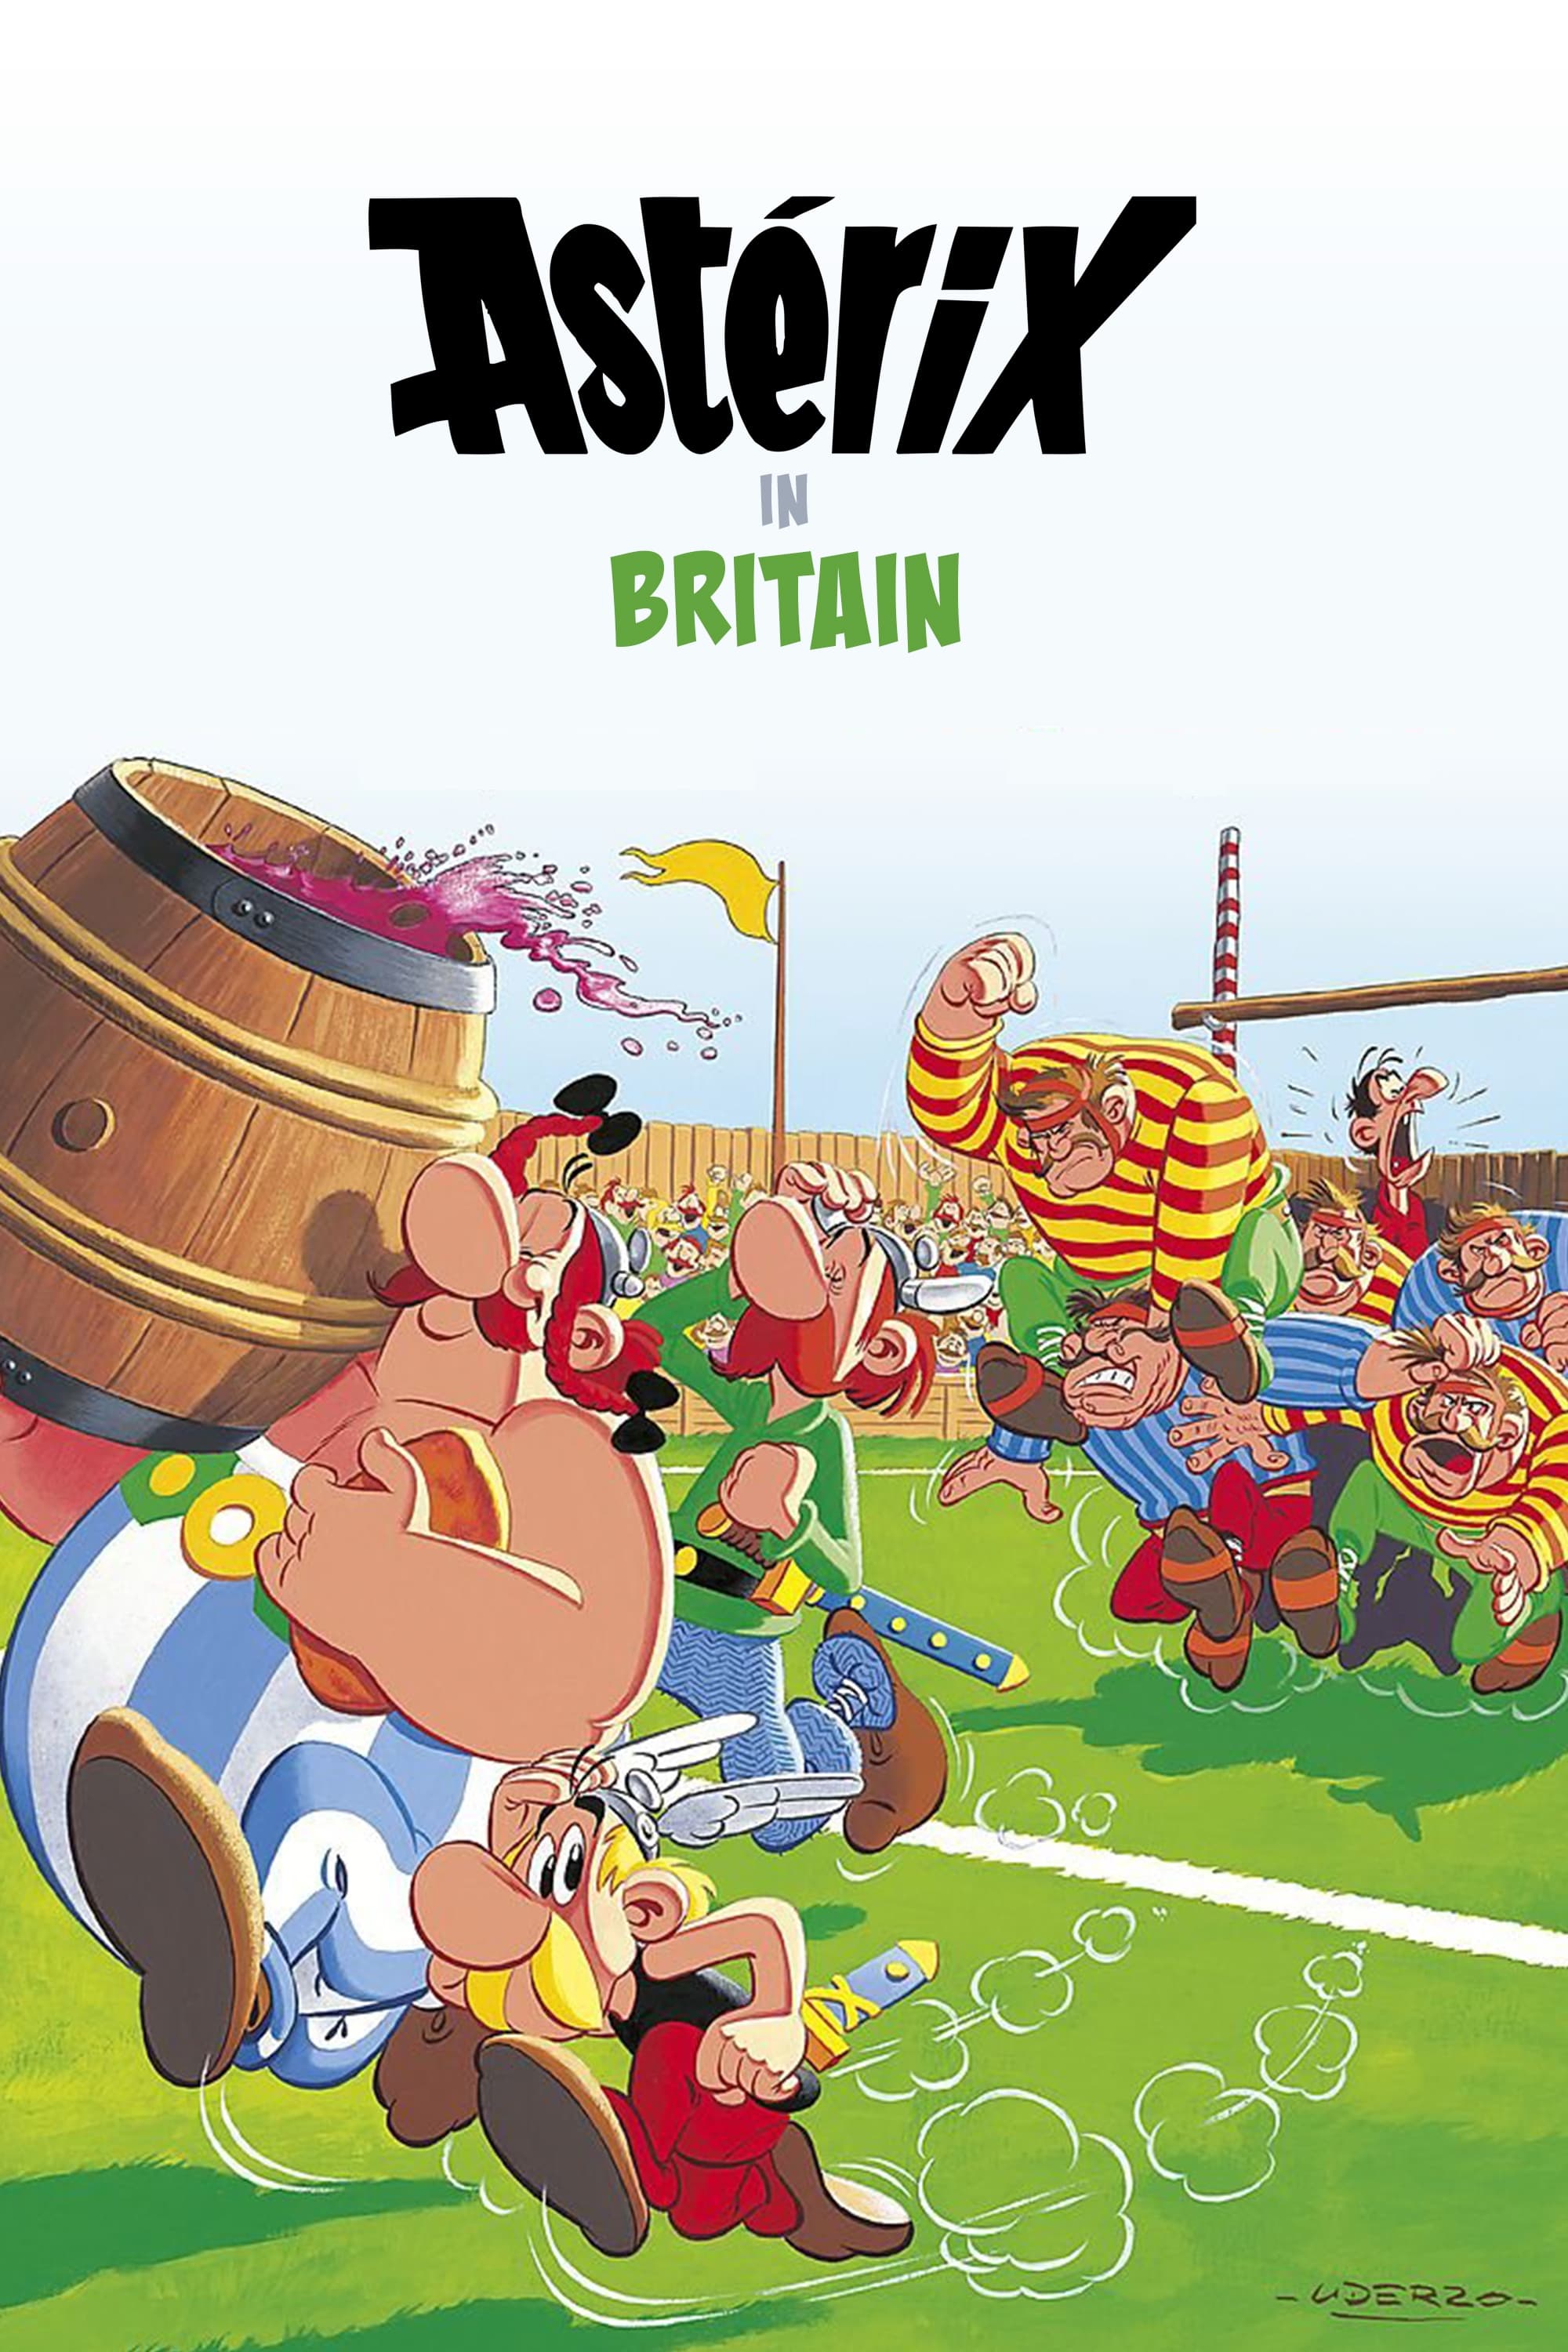 Asterix entre os Bretões